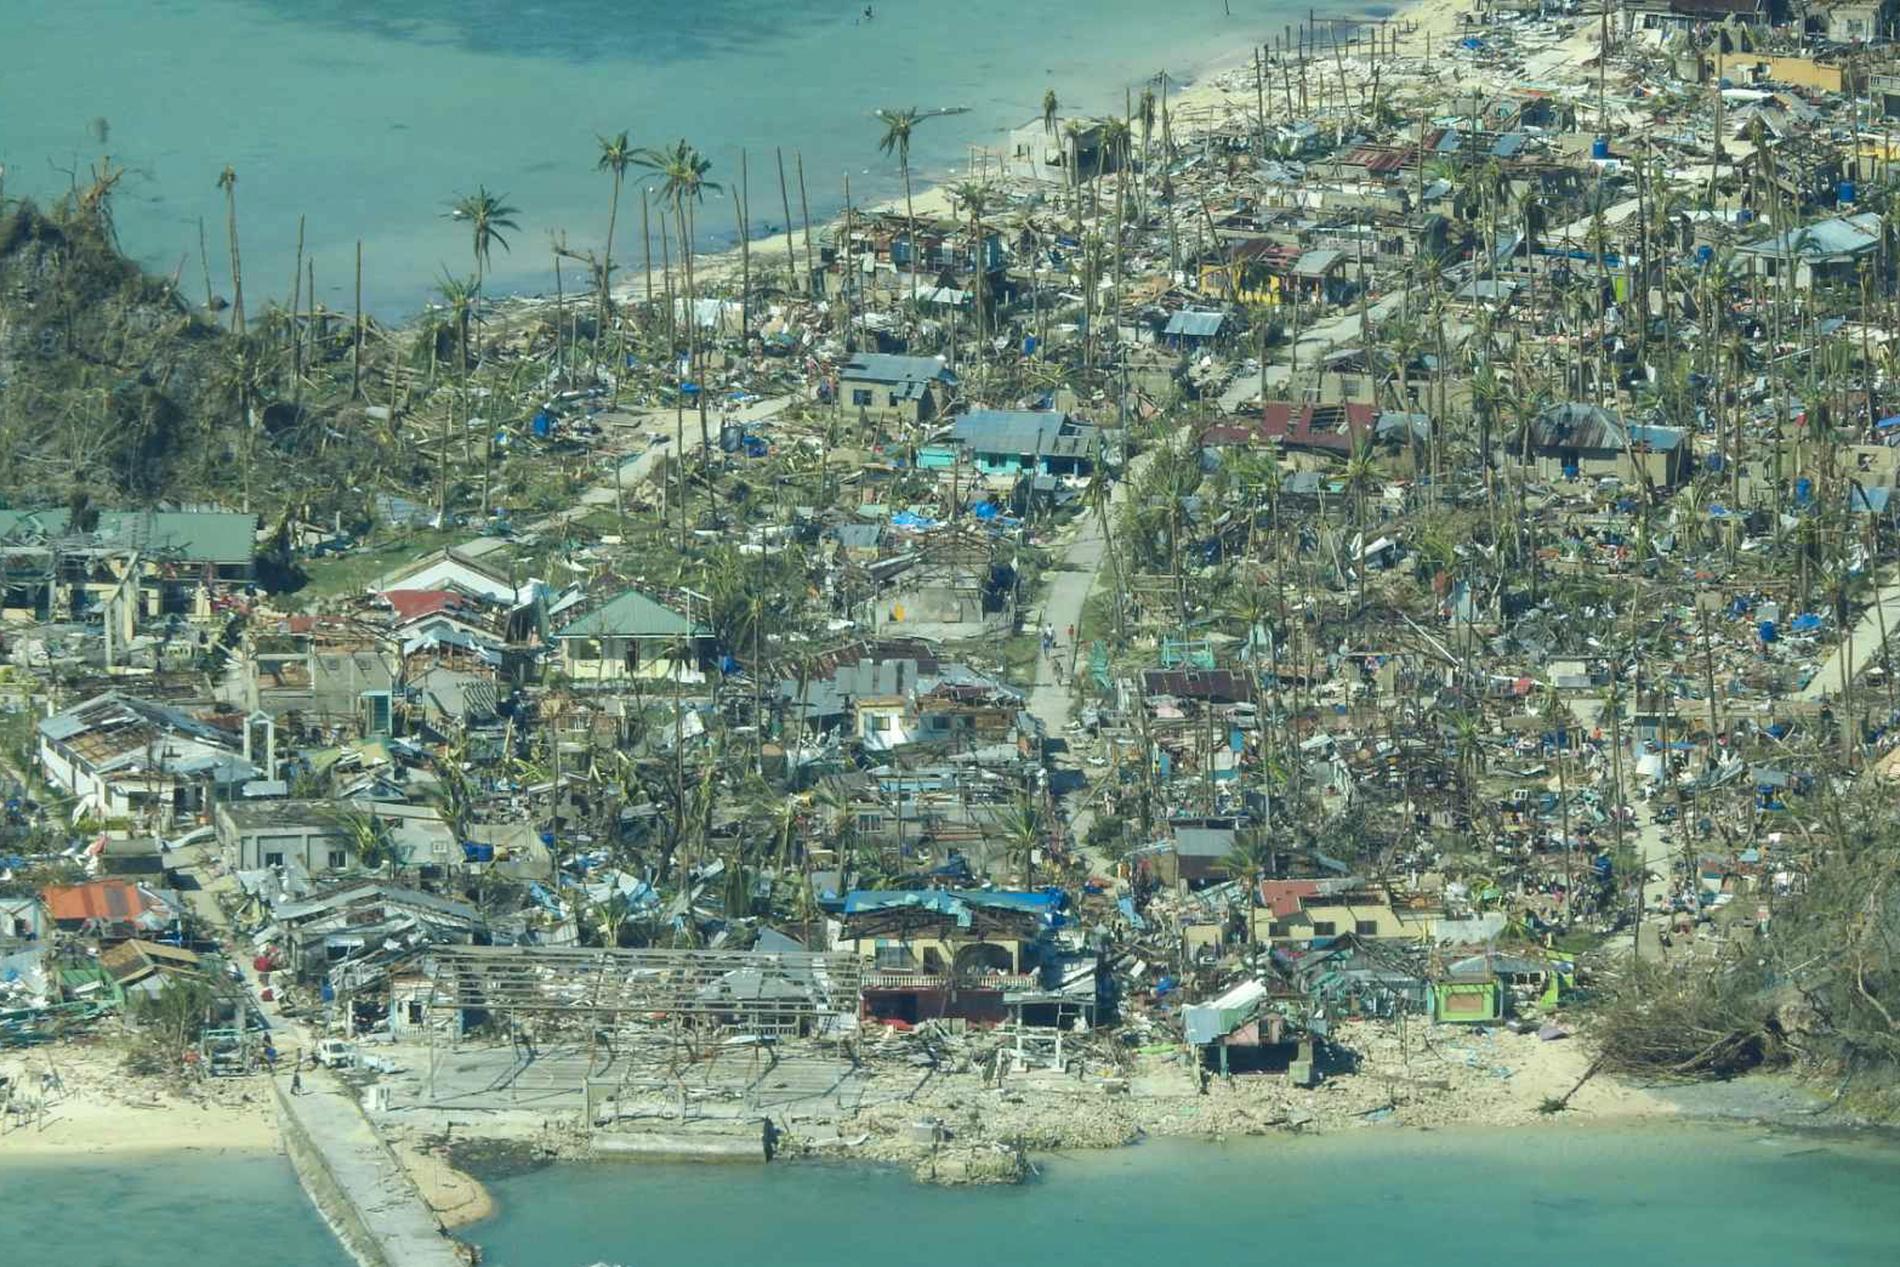 Det här fotot från den filippinska kustbevakningen visar skadorna efter tyfonen i en kustby i Surigao del Norte-provinsen i södra Filippinerna. Över 300 000 människor har flytt området. Förödelsen är närmast total.